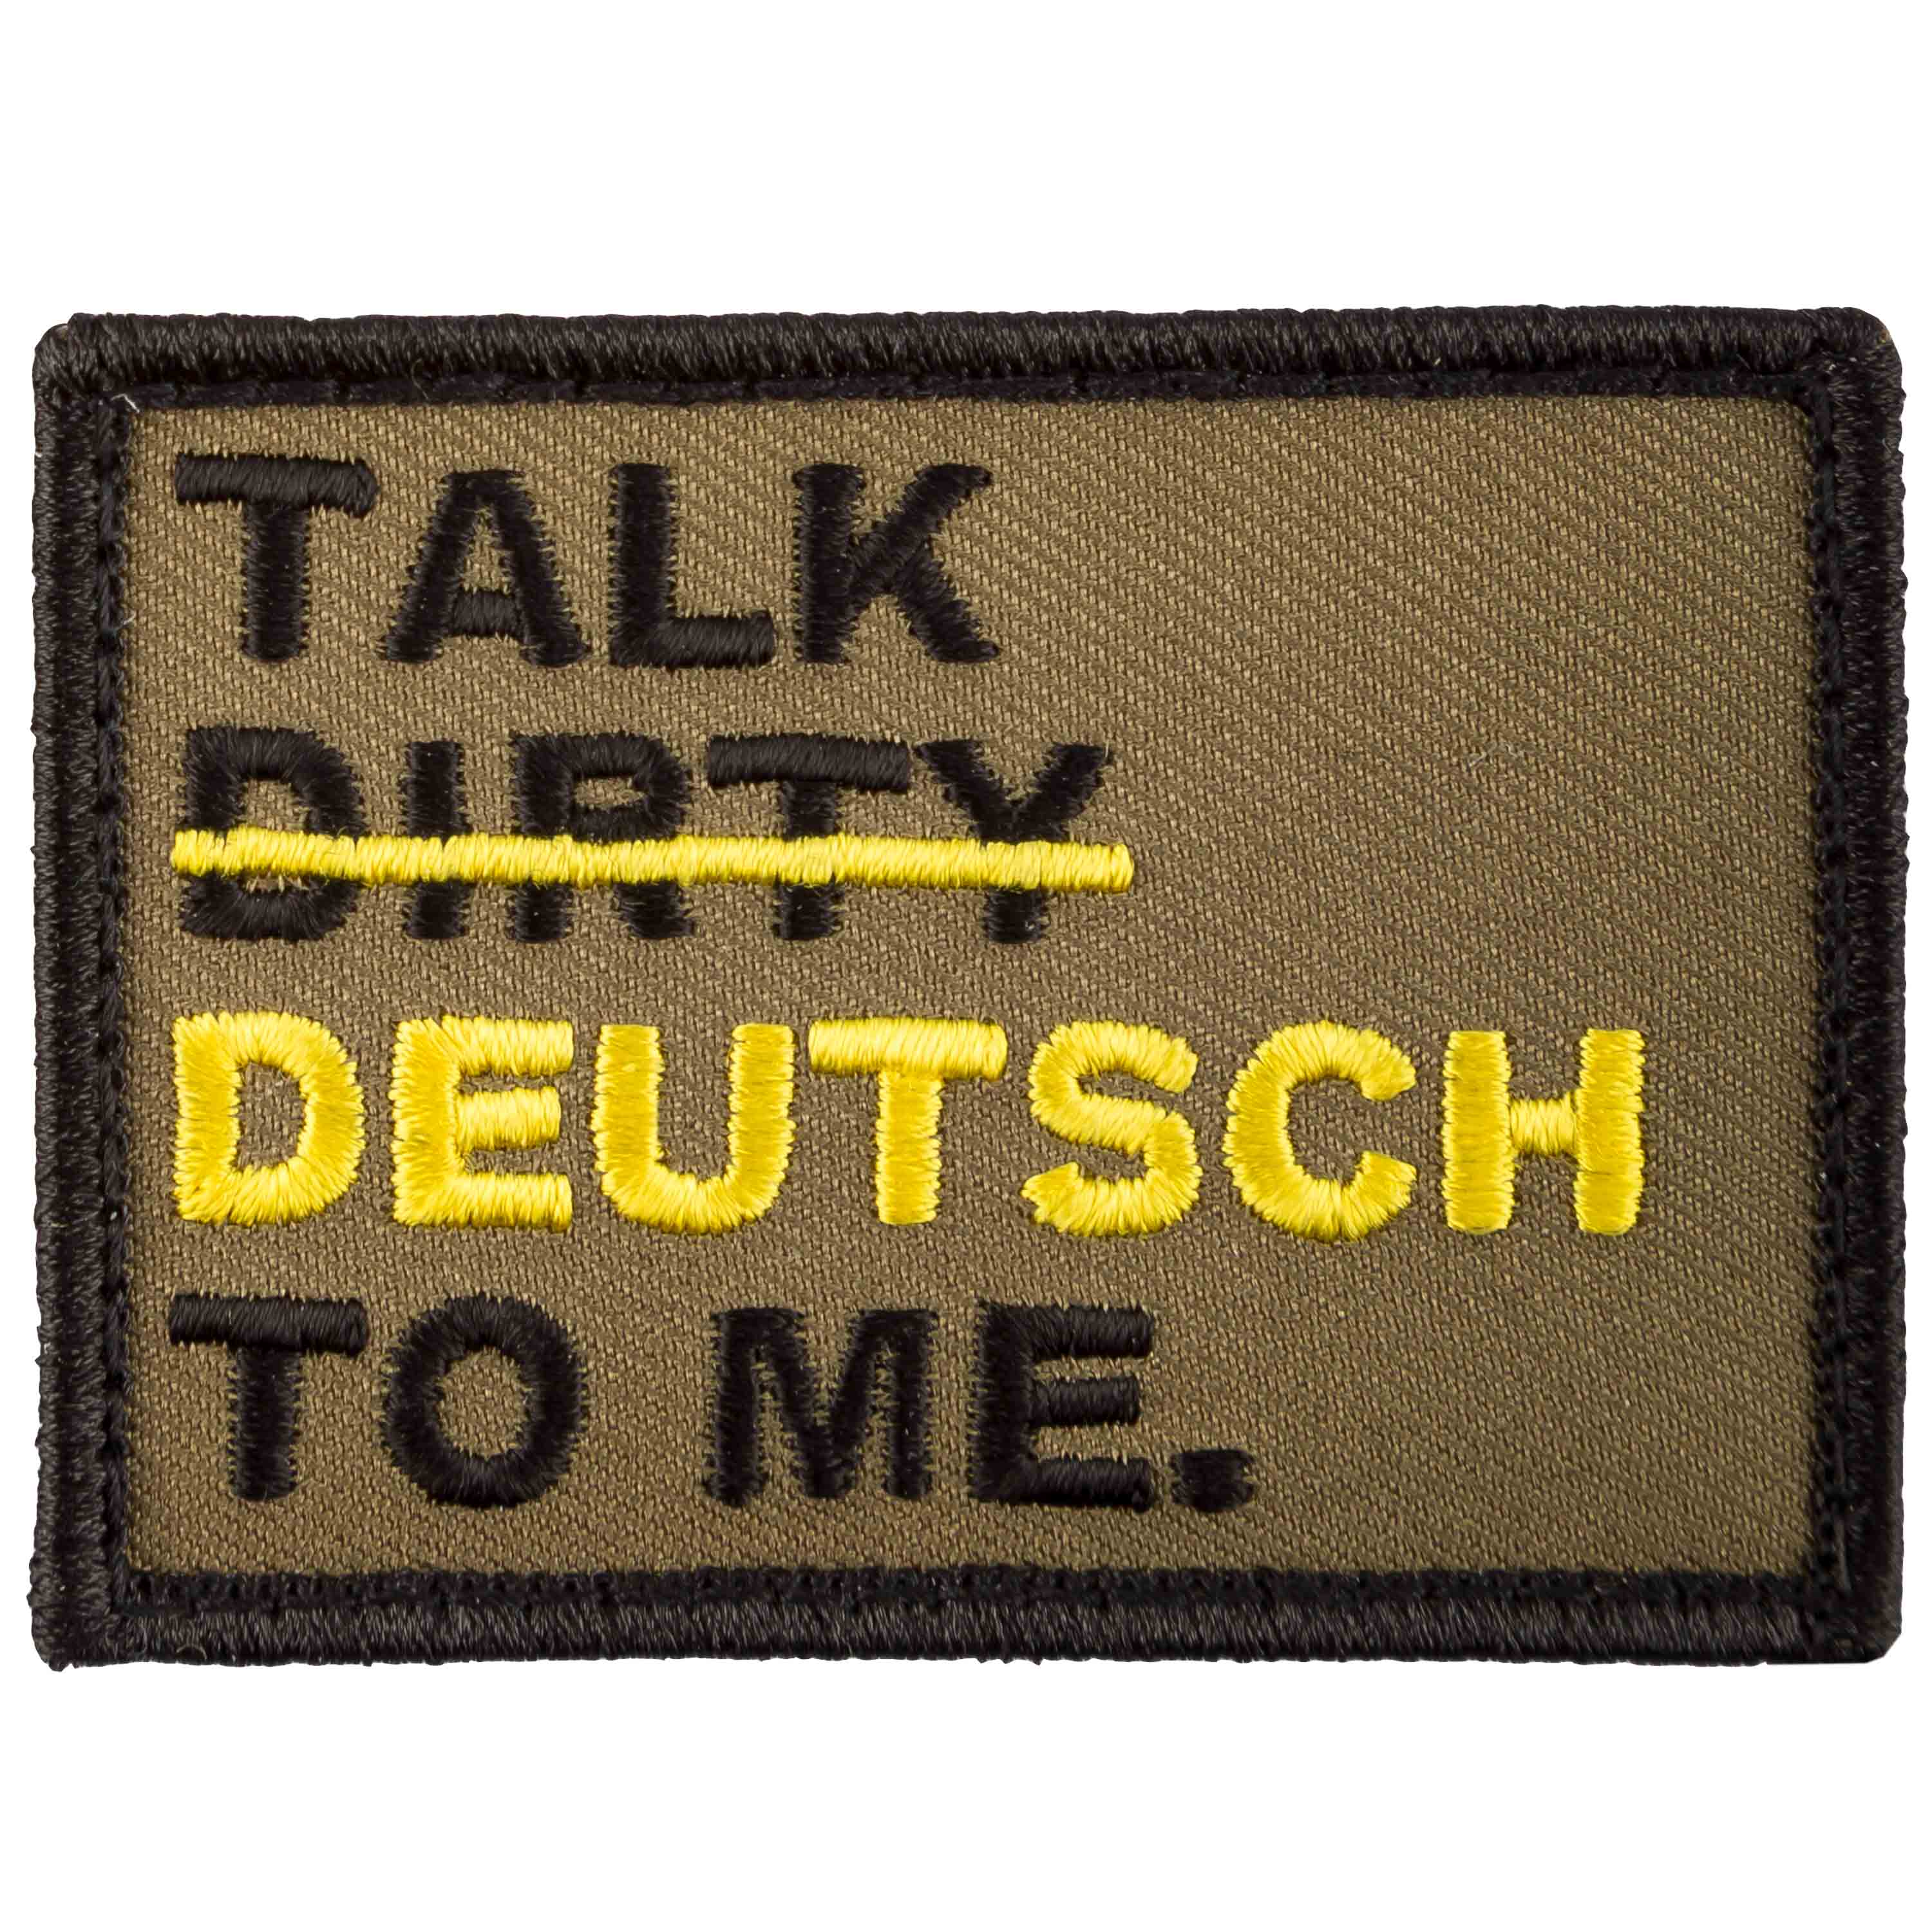 Talk deutsch dirty 